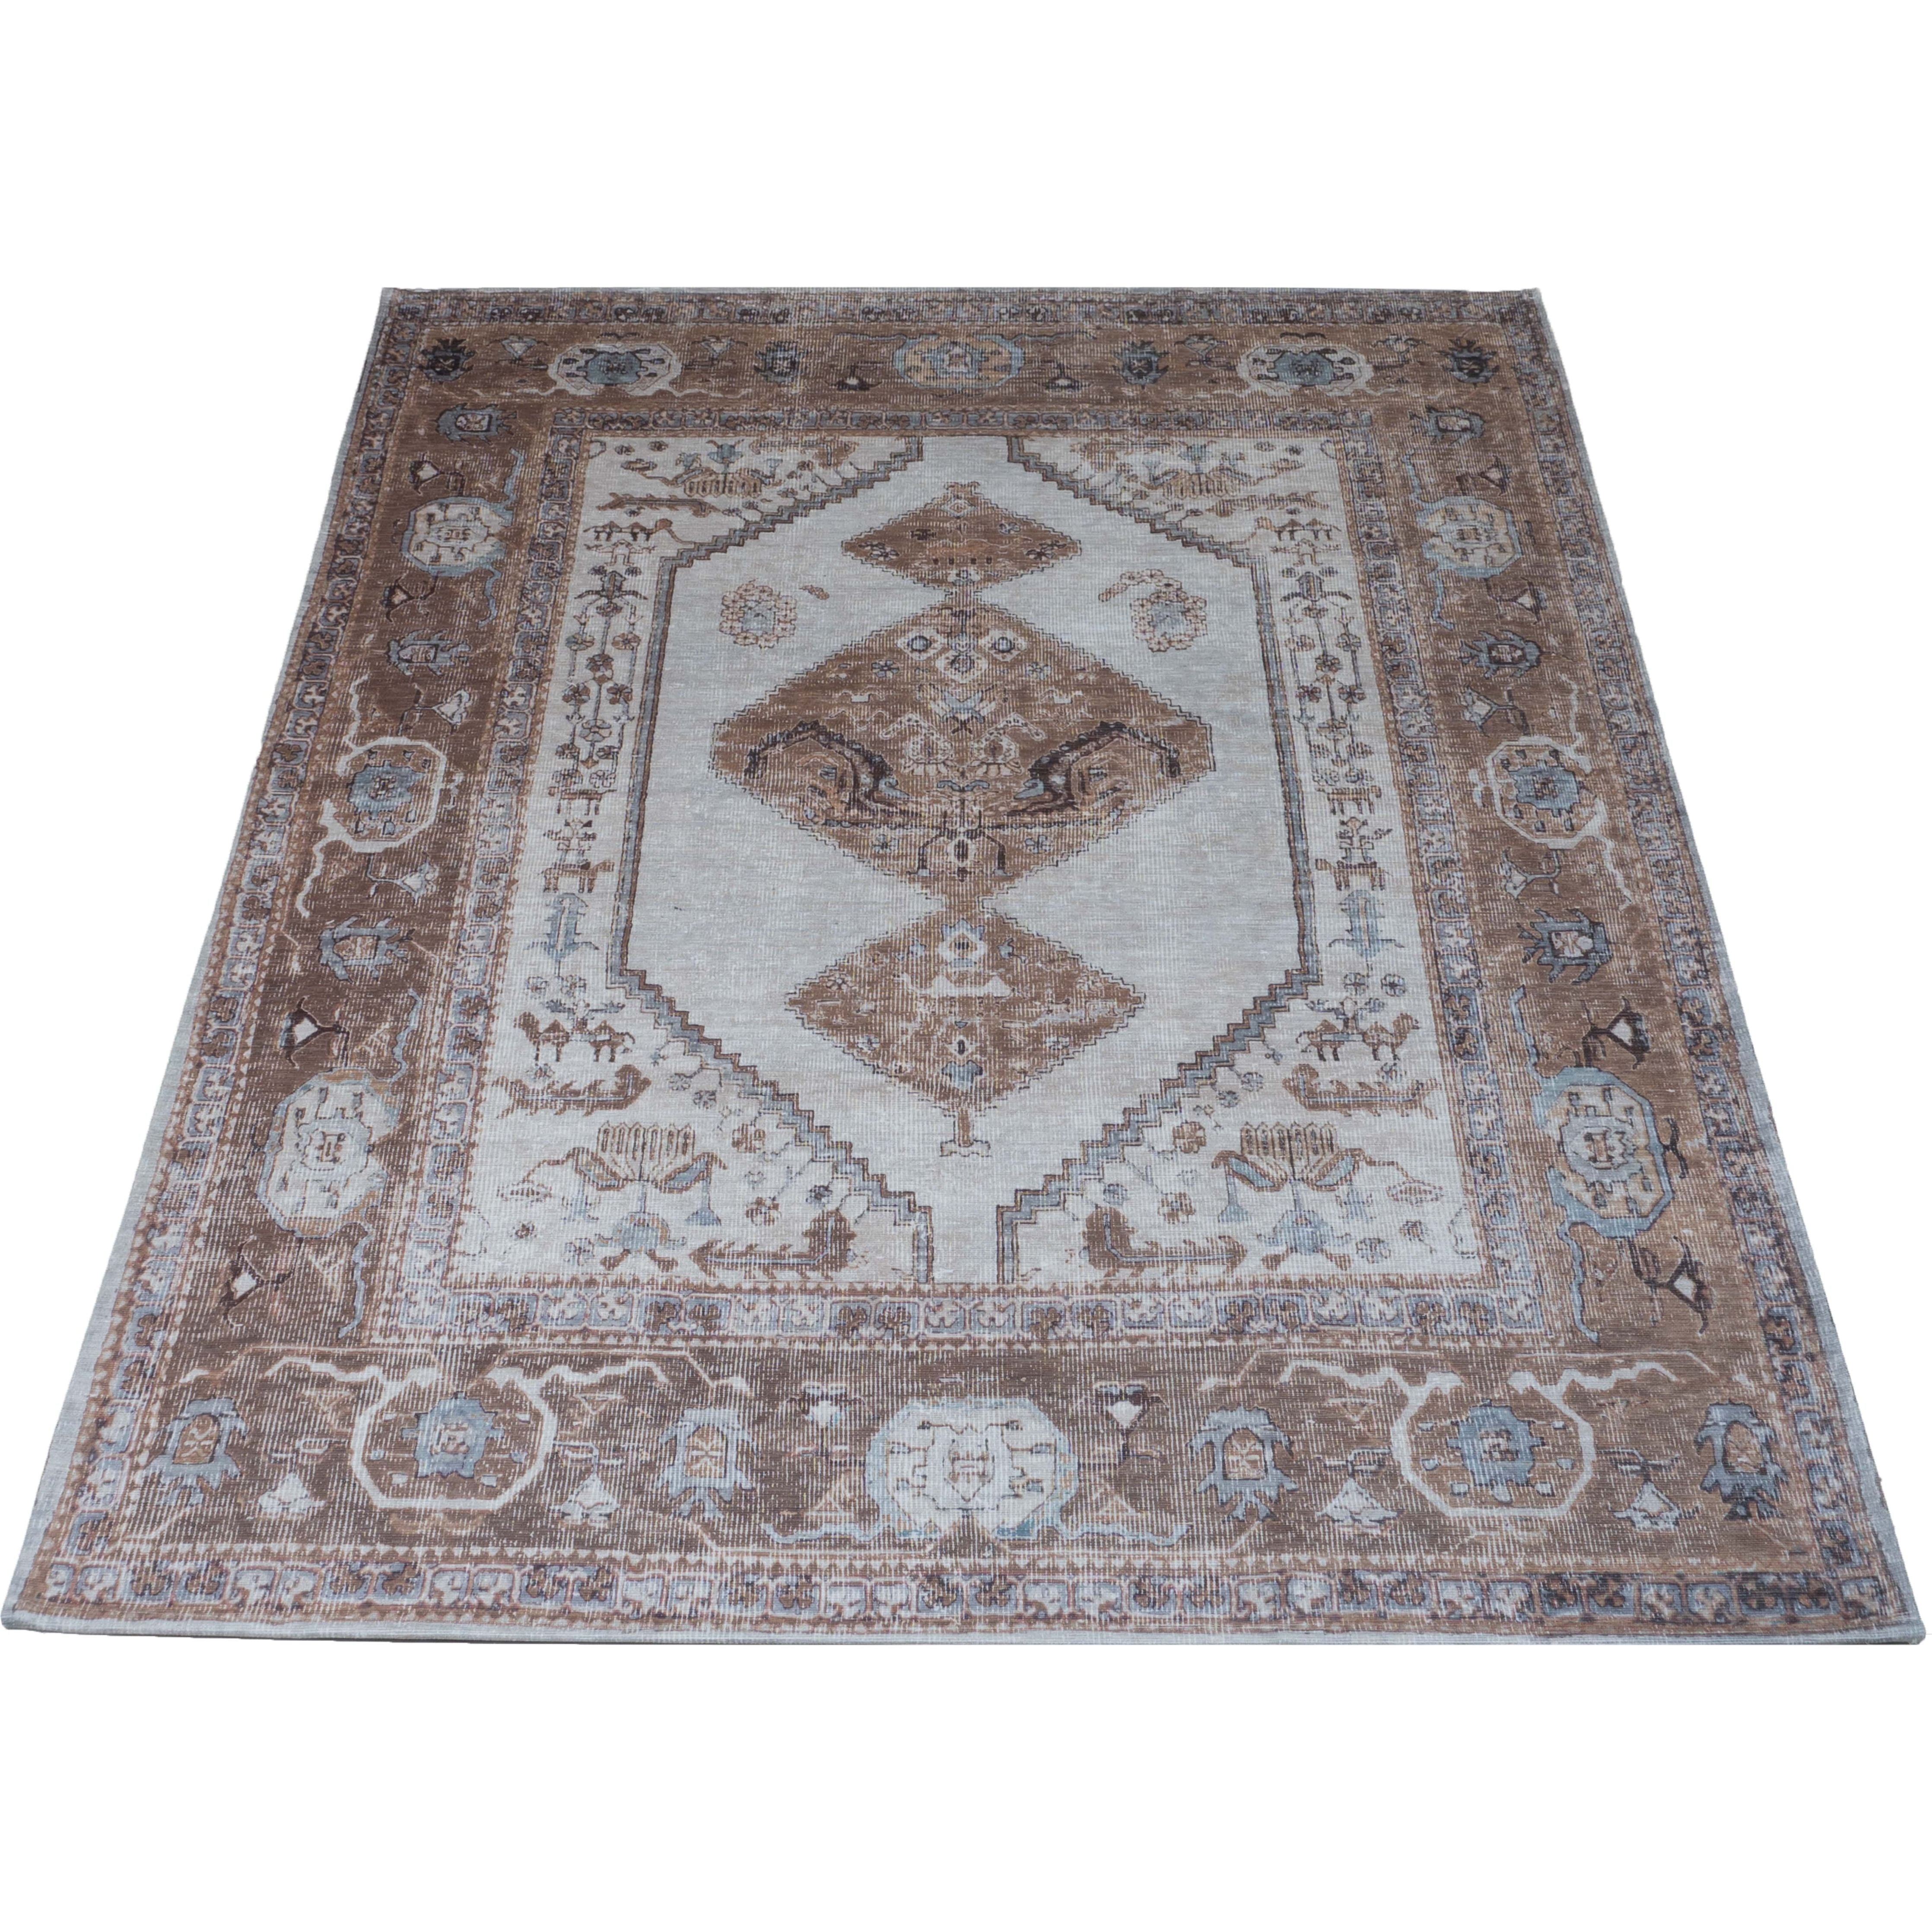 Carpet Karaca Brown 08 - 70 x 140 cm